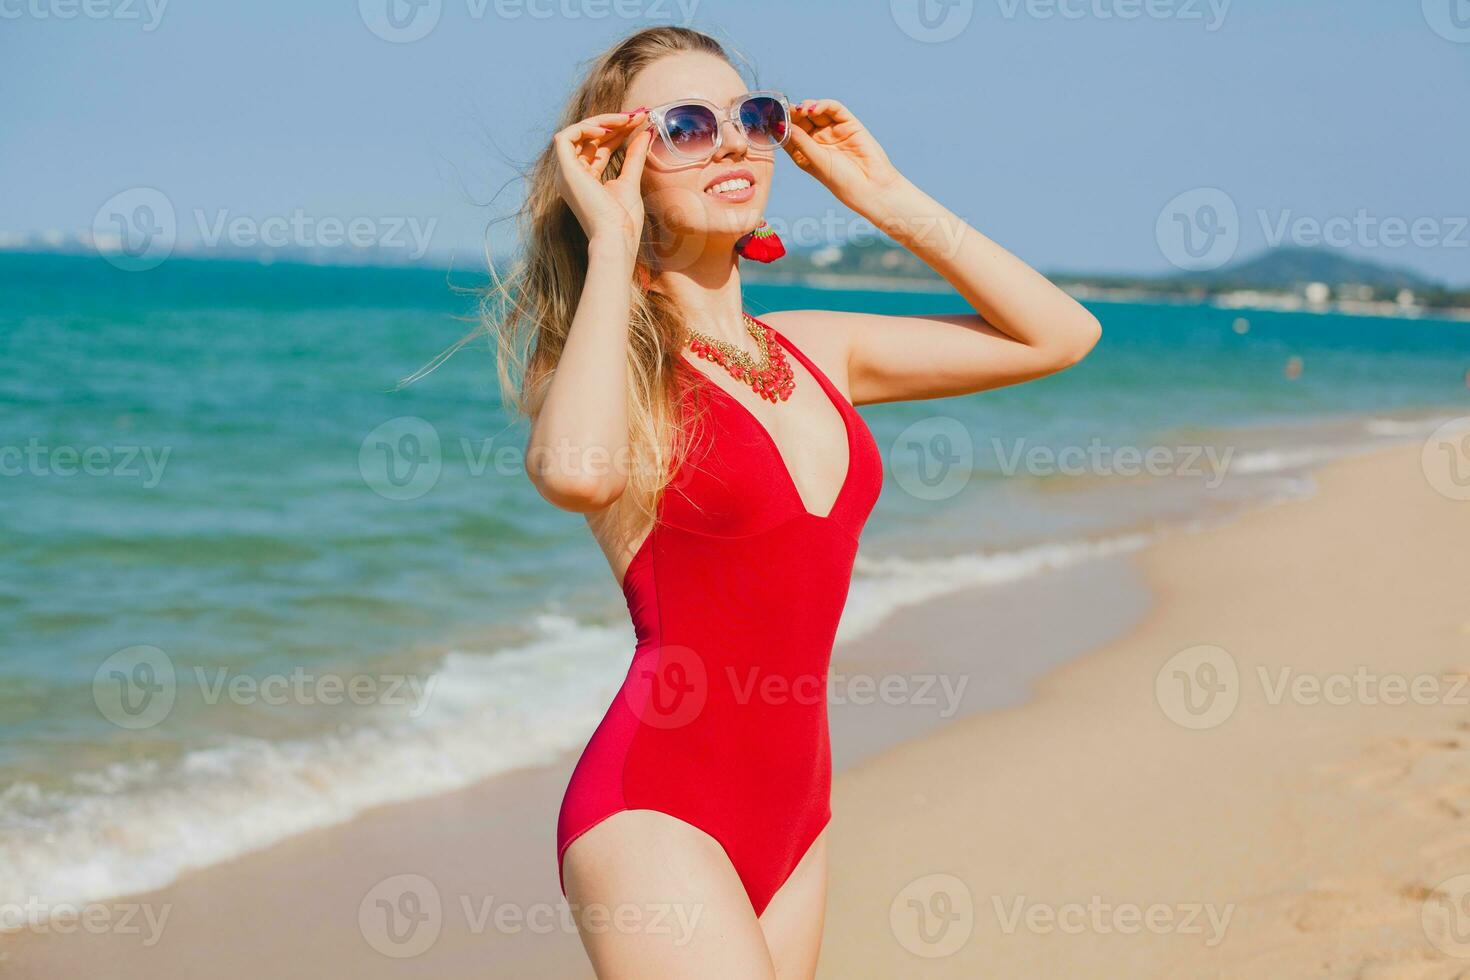 jung schön blond Frau Sonnenbaden auf Strand im rot Schwimmen Anzug, Sonnenbrille foto